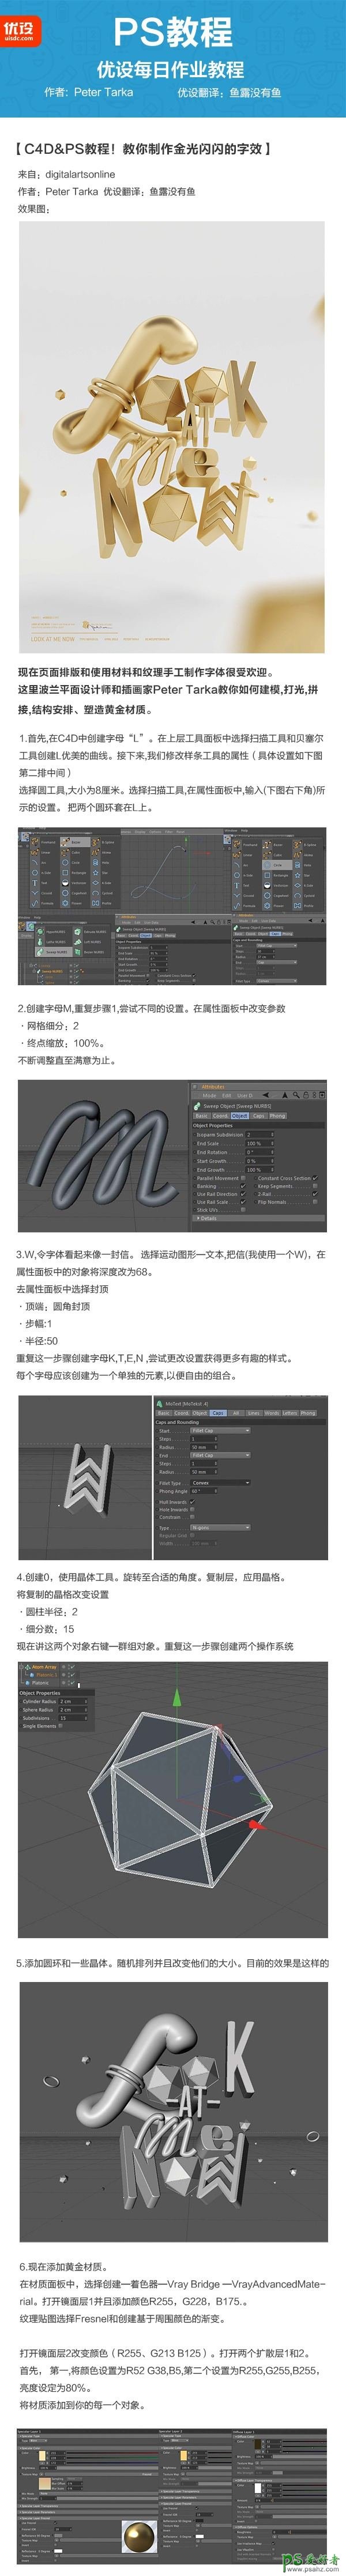 c4d文字特效制作教程：结合PS软件制作金属质感的3D立体字体。